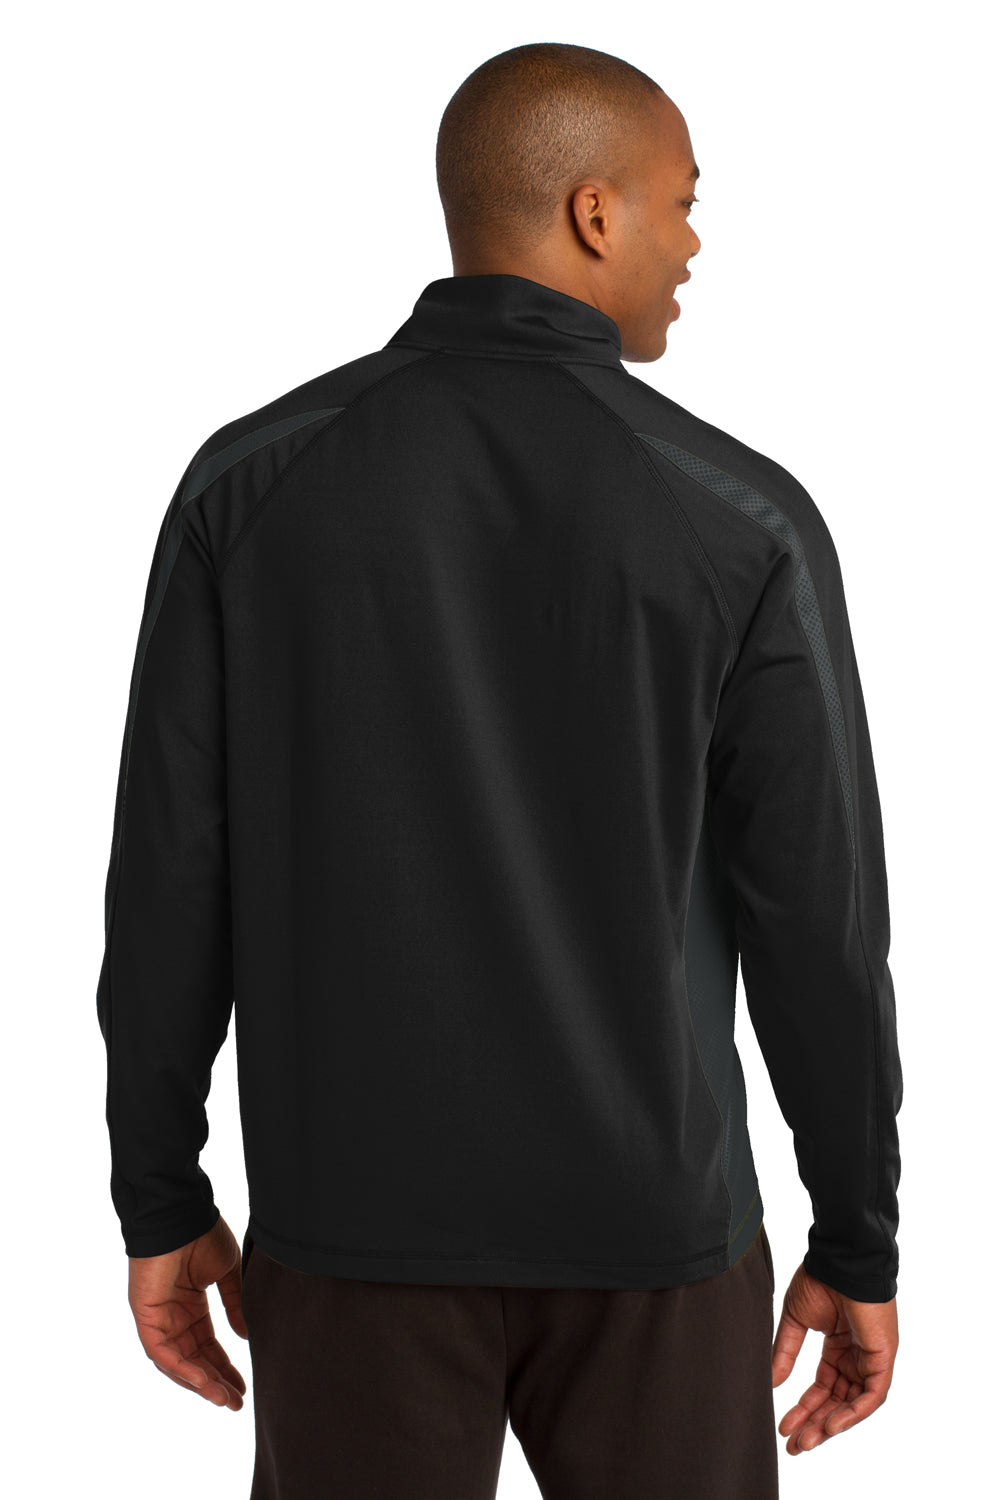 Sport-Tek ST851 Mens Sport-Wick Moisture Wicking 1/4 Zip Sweatshirt Black/Grey Back